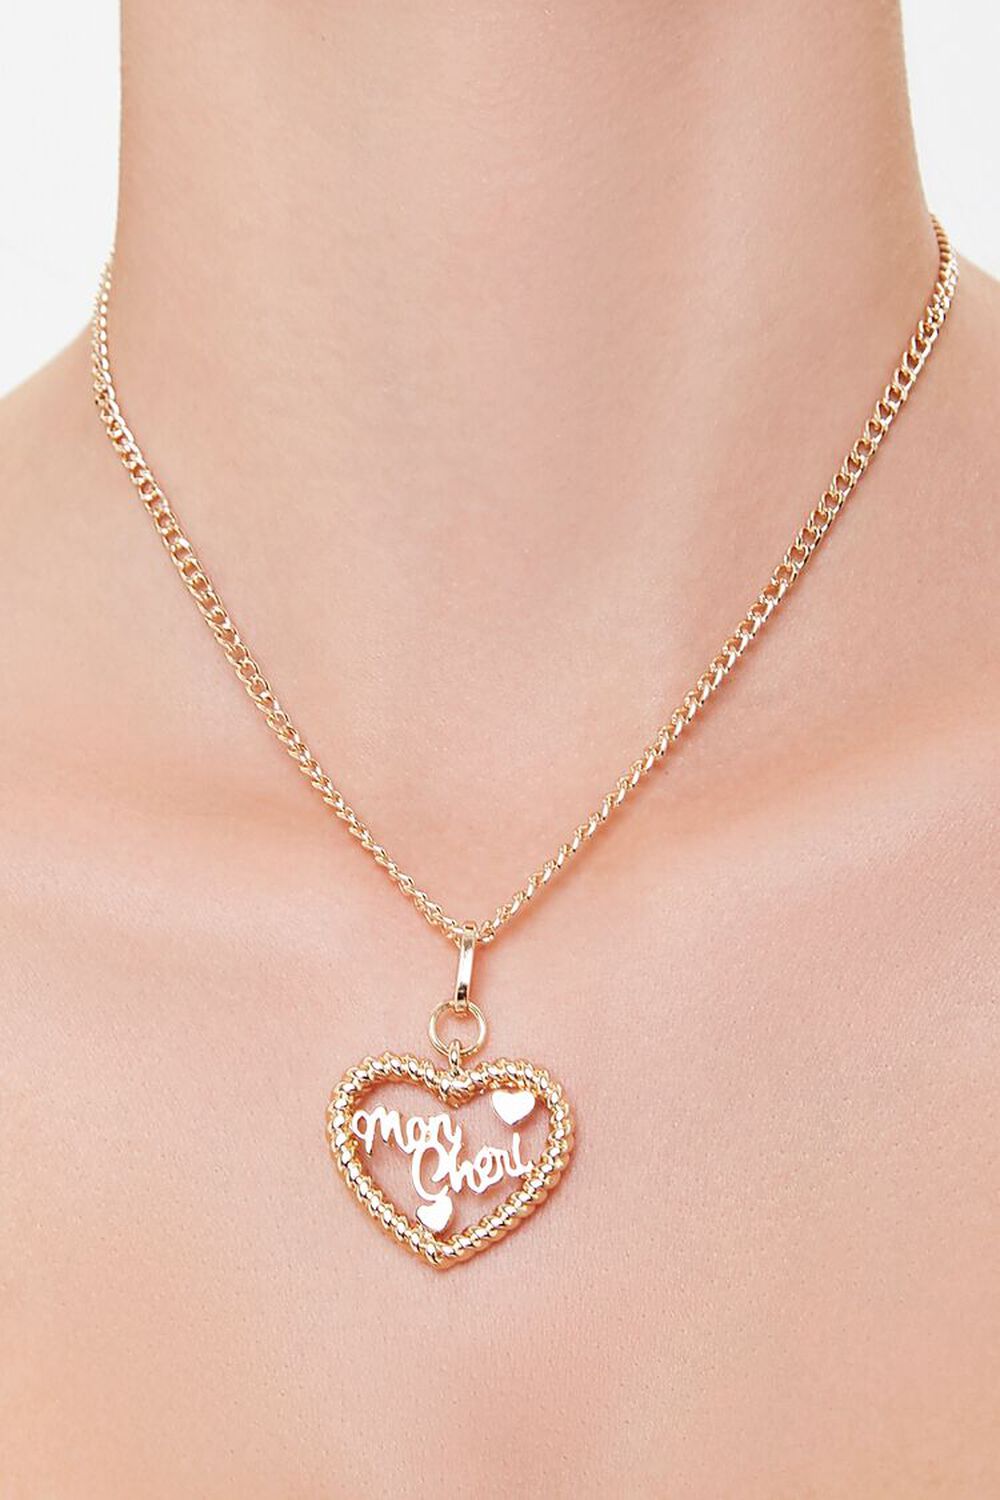 Mon Cheri Heart Pendant Necklace, image 1